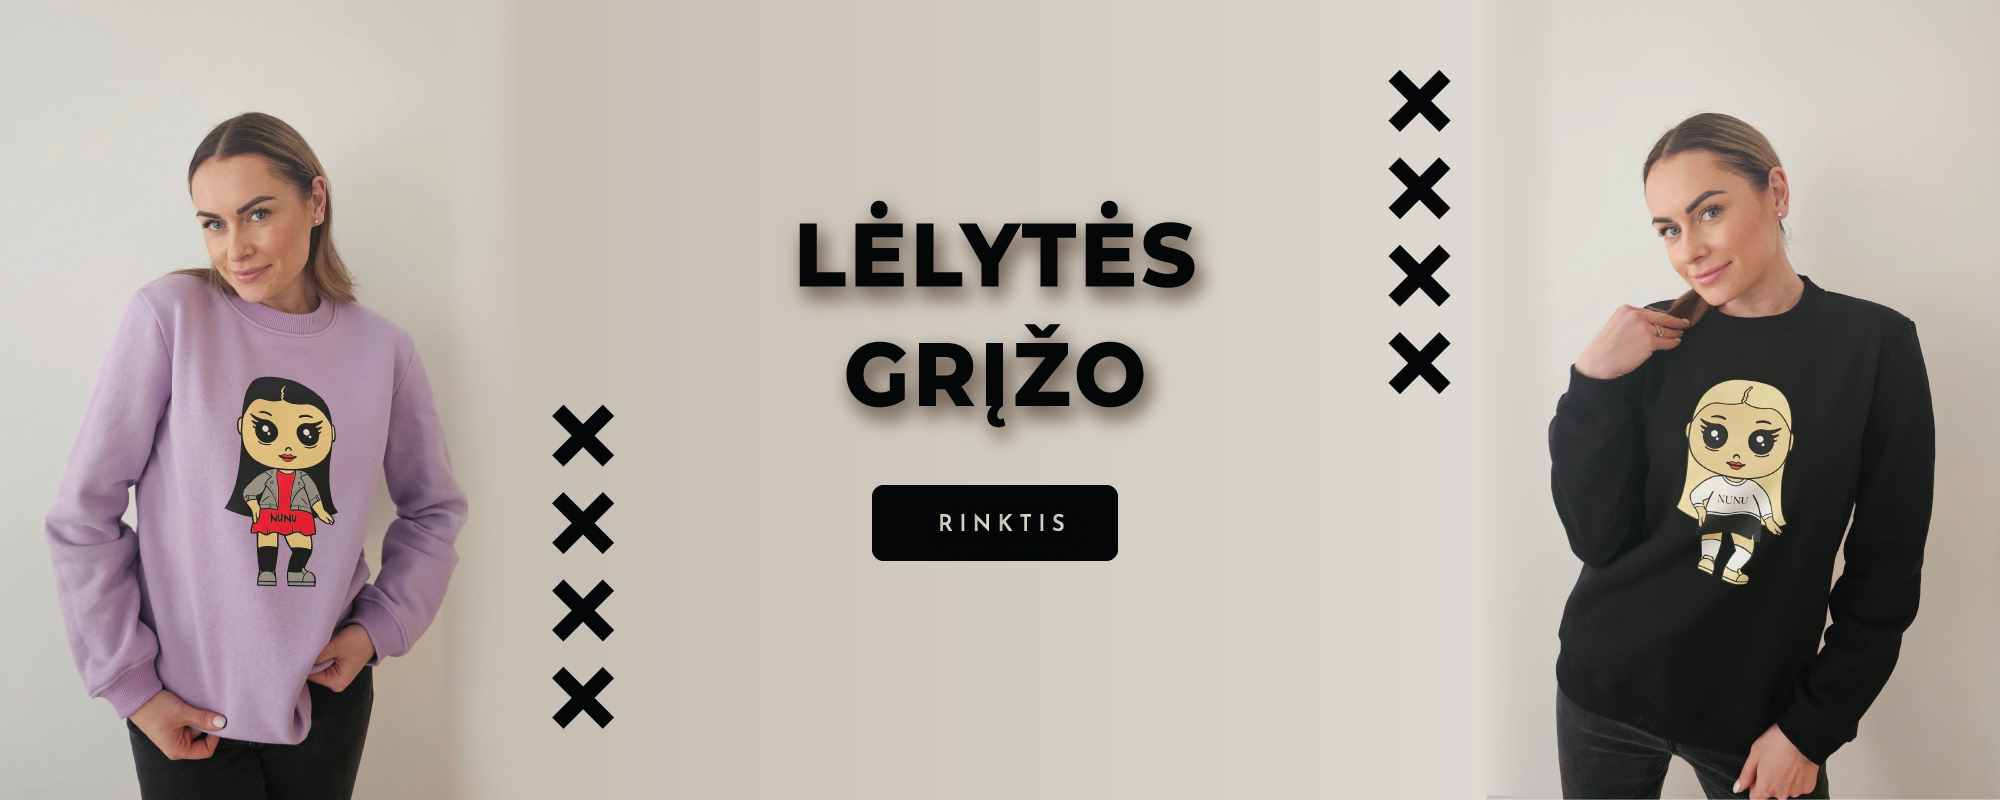 lelytes-2